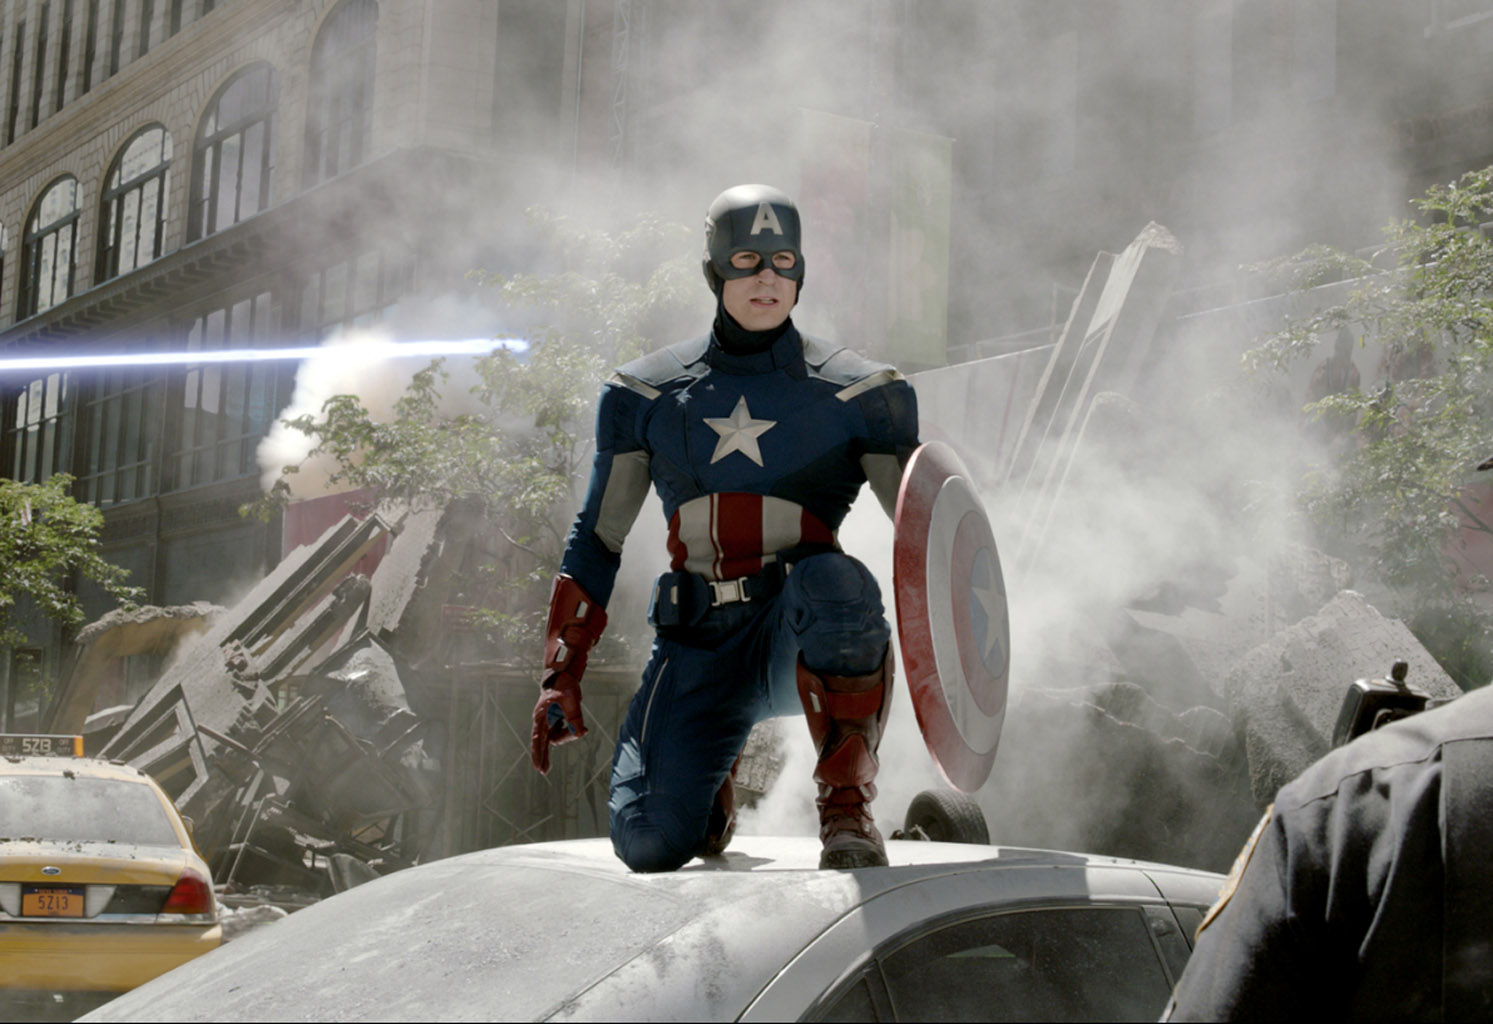 http://2.bp.blogspot.com/-9Ihx2TljD6c/T61yNkD3A0I/AAAAAAAADYw/Kz4A6OhvjQY/s1600/Marvel-The-Avengers-Movie-2012-HD-Wallpaper-Captain-America-Steve-Rogers-81.jpg